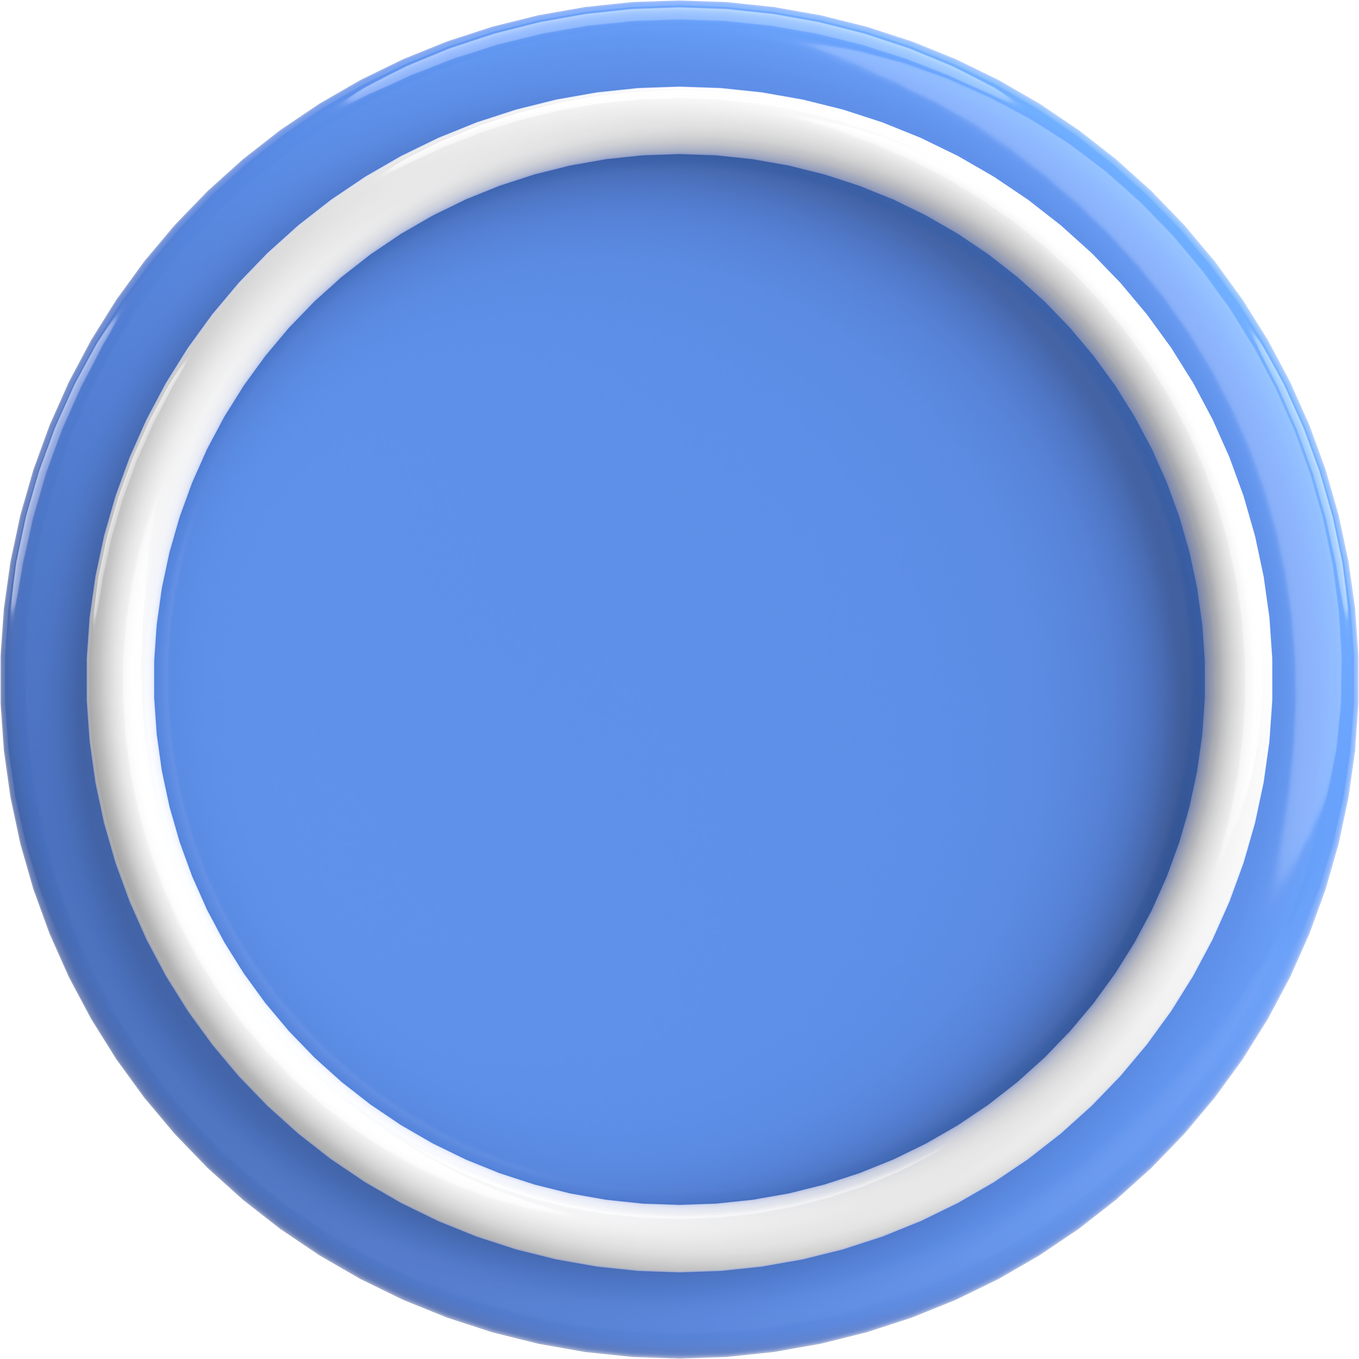 3D circle button. Empty button. 3D illustration.